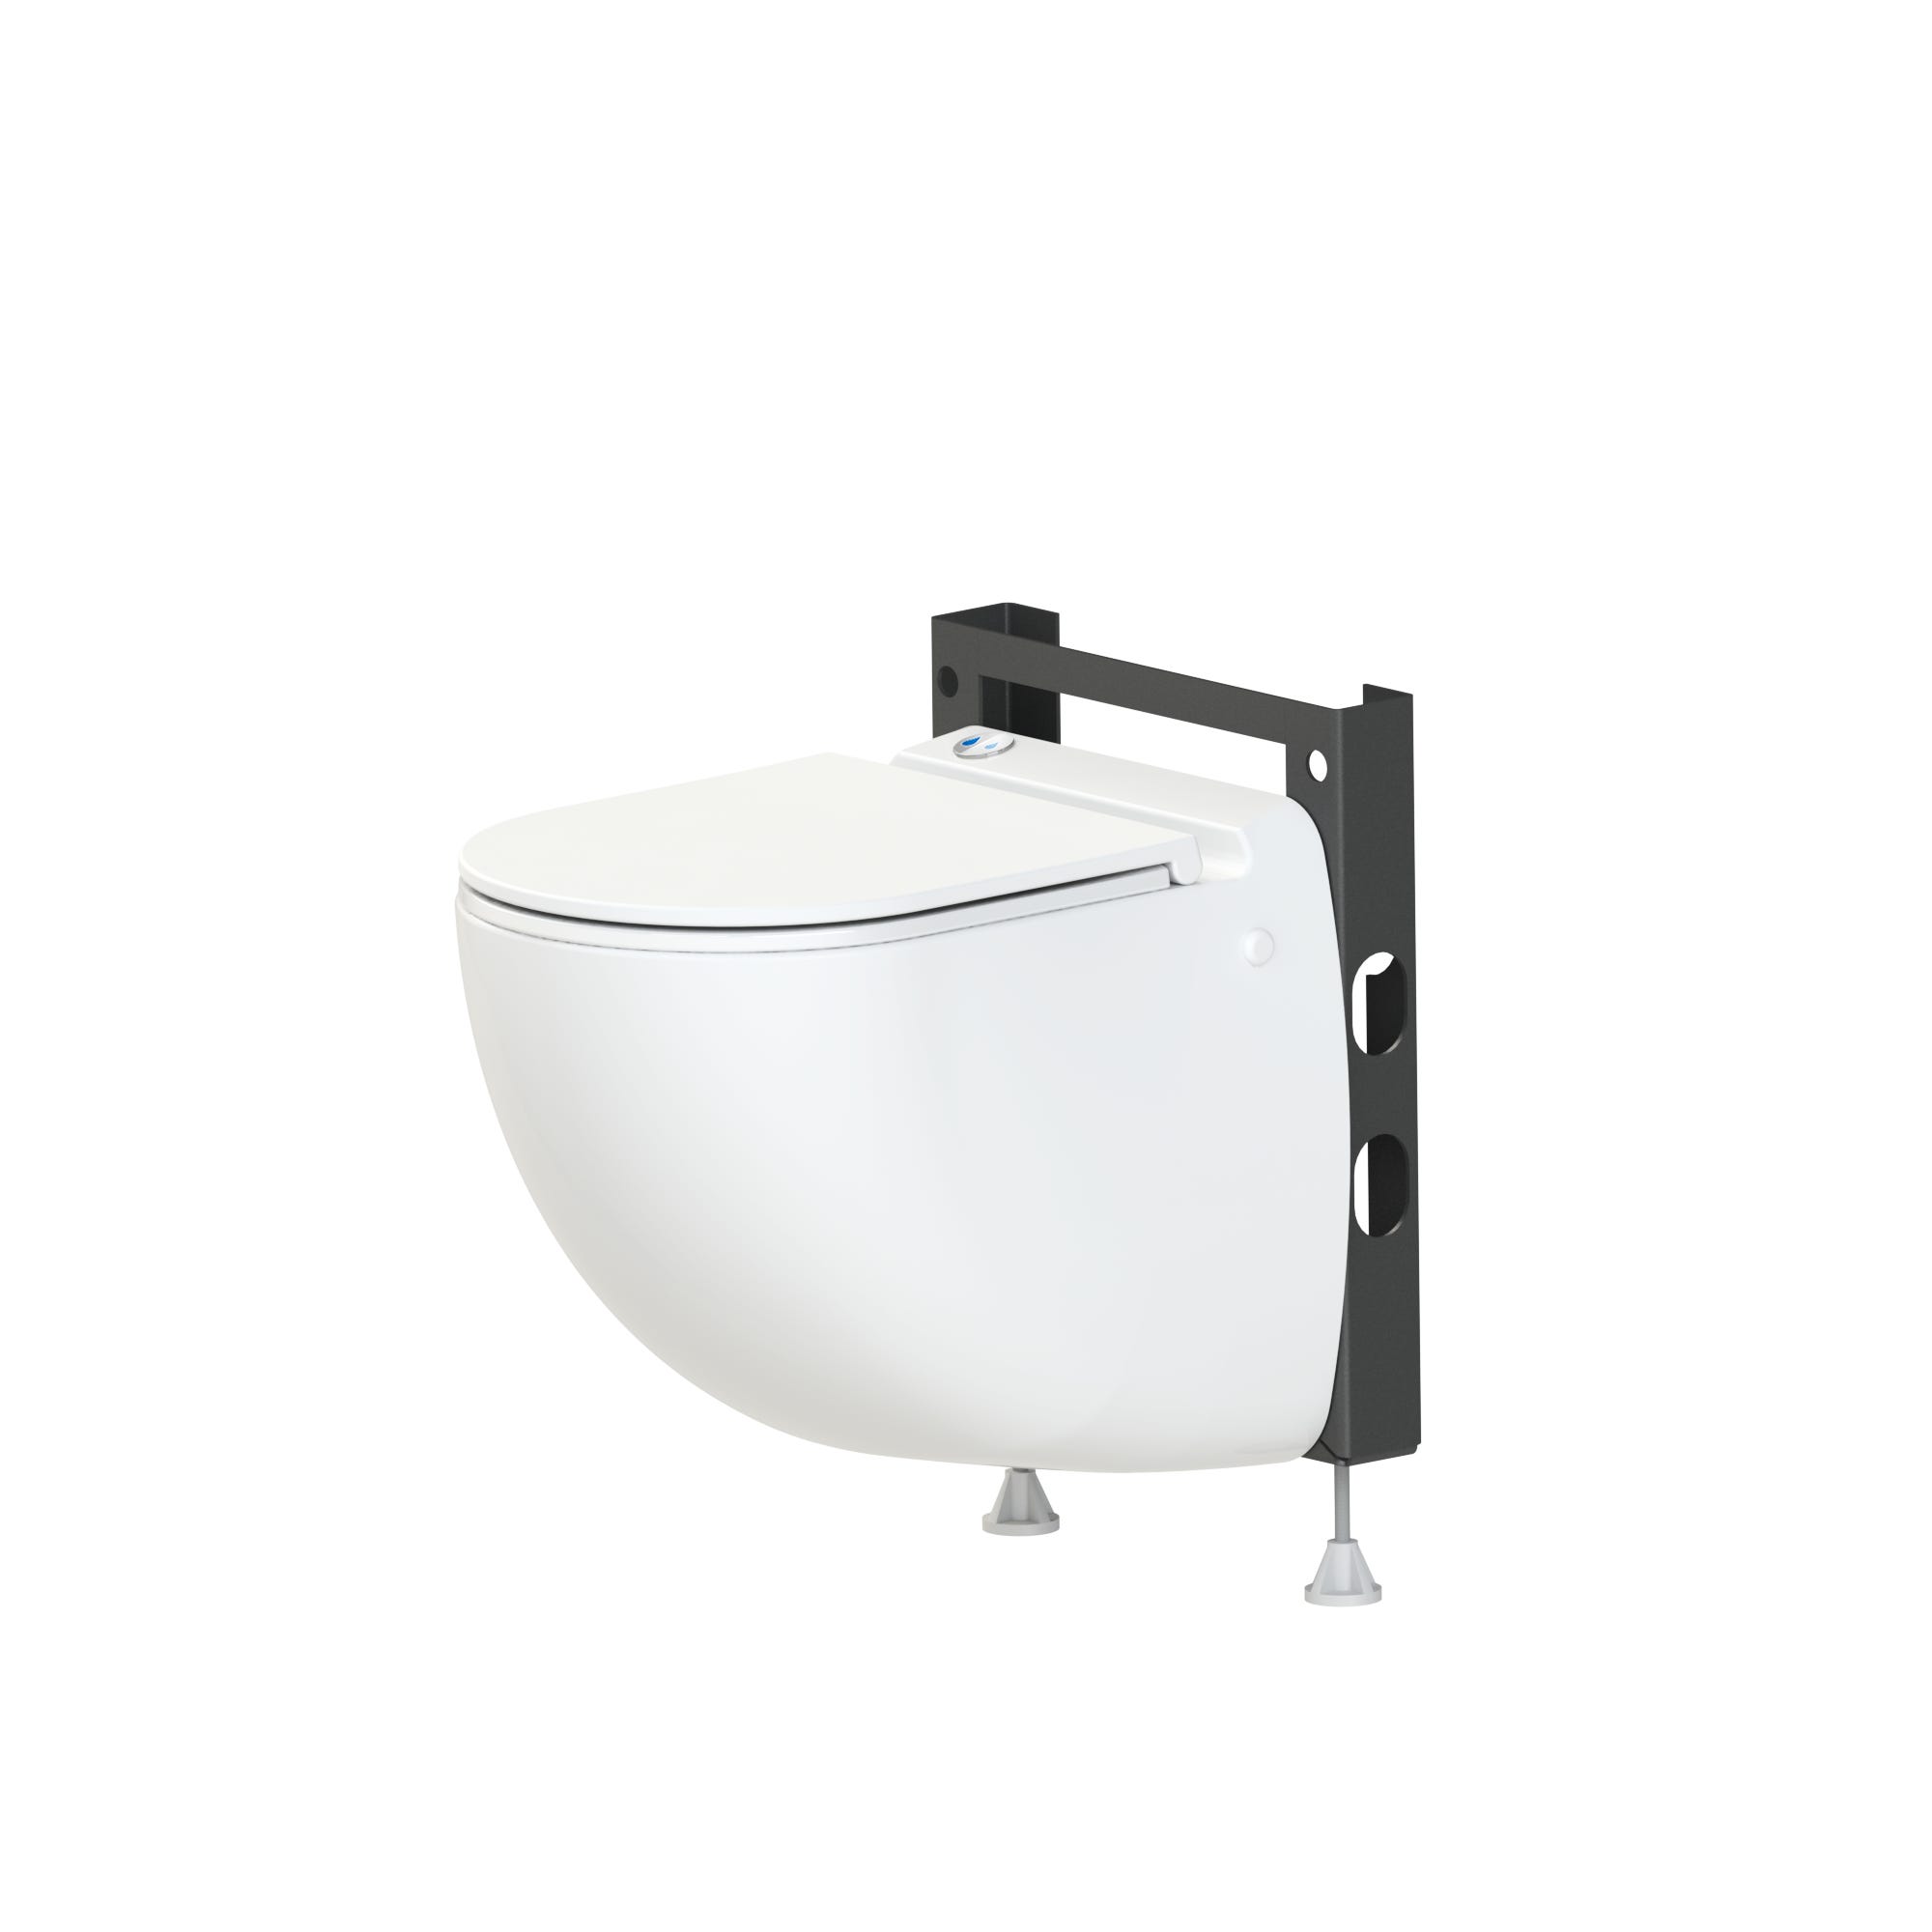 WC à poser avec broyeur intégré mécanisme silencieux Turbo design